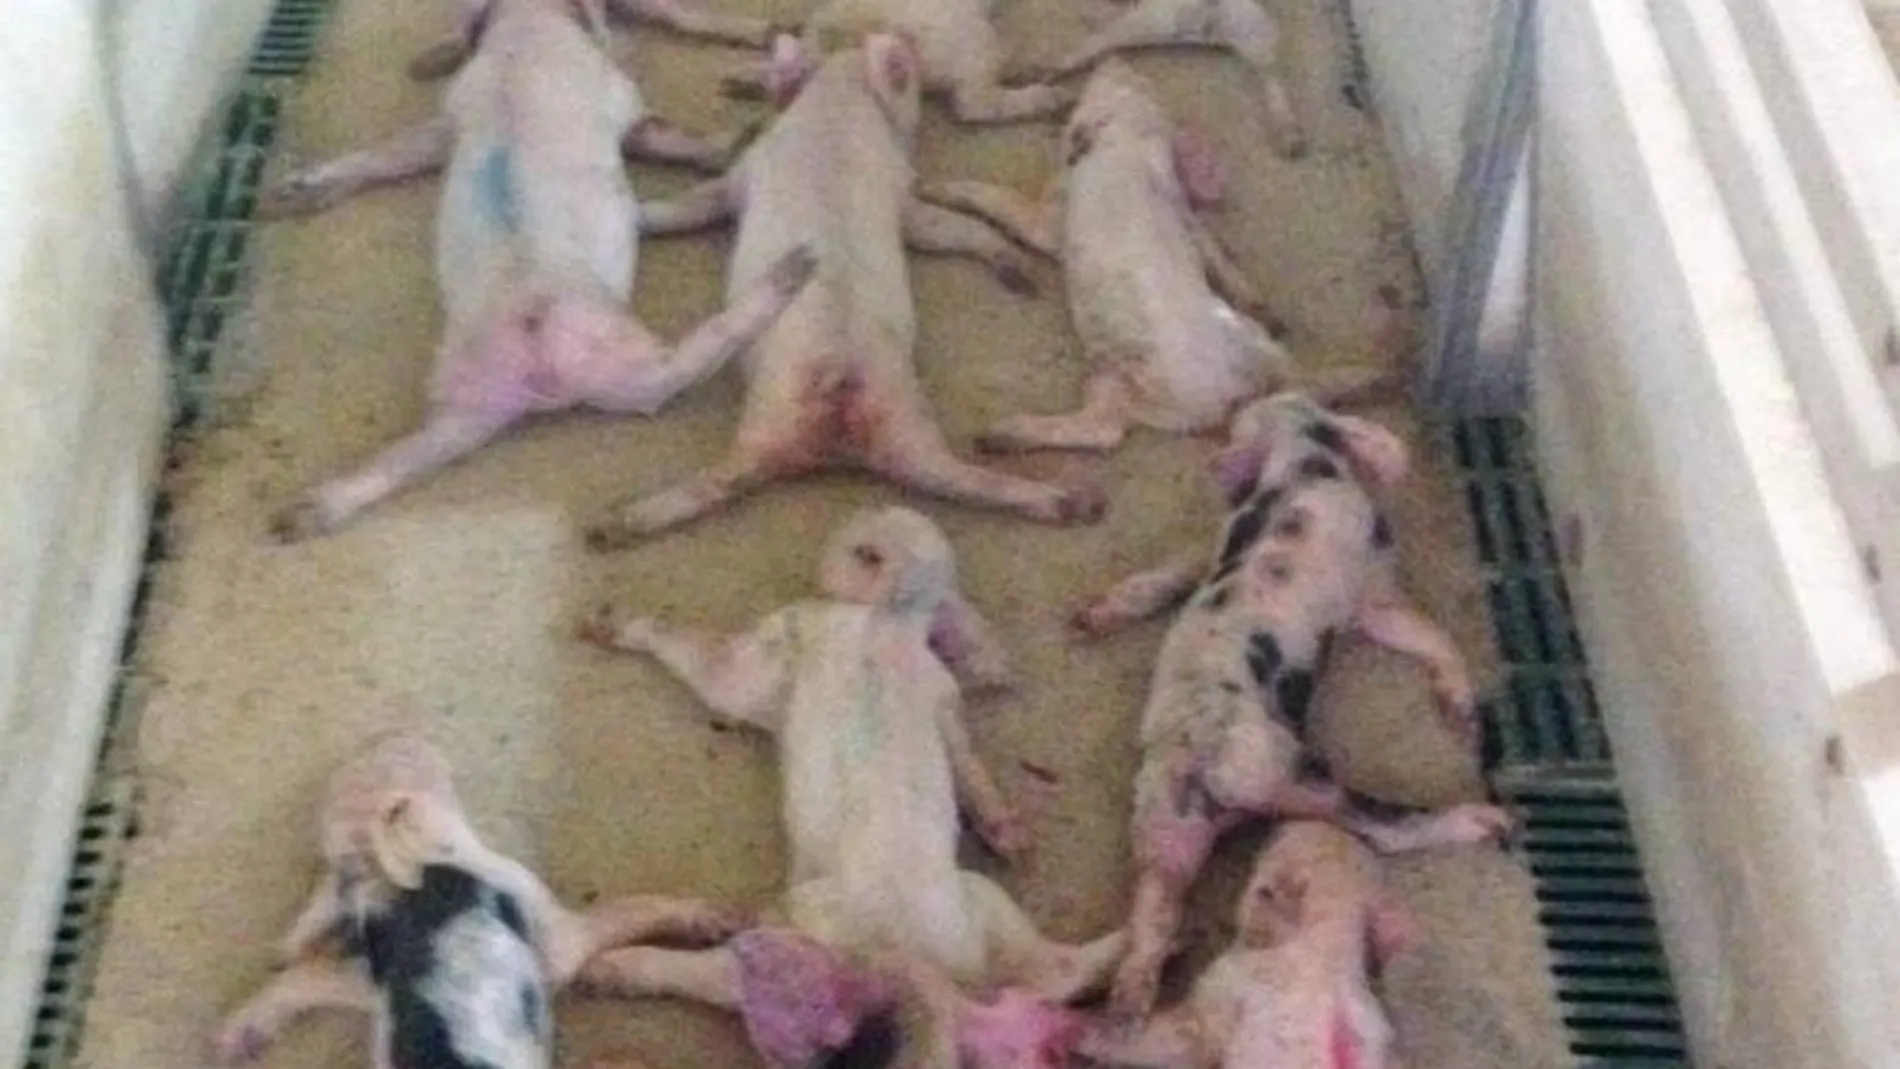 Algunos de los lechones muertos en una imagen distribuida por la Guardia Civil